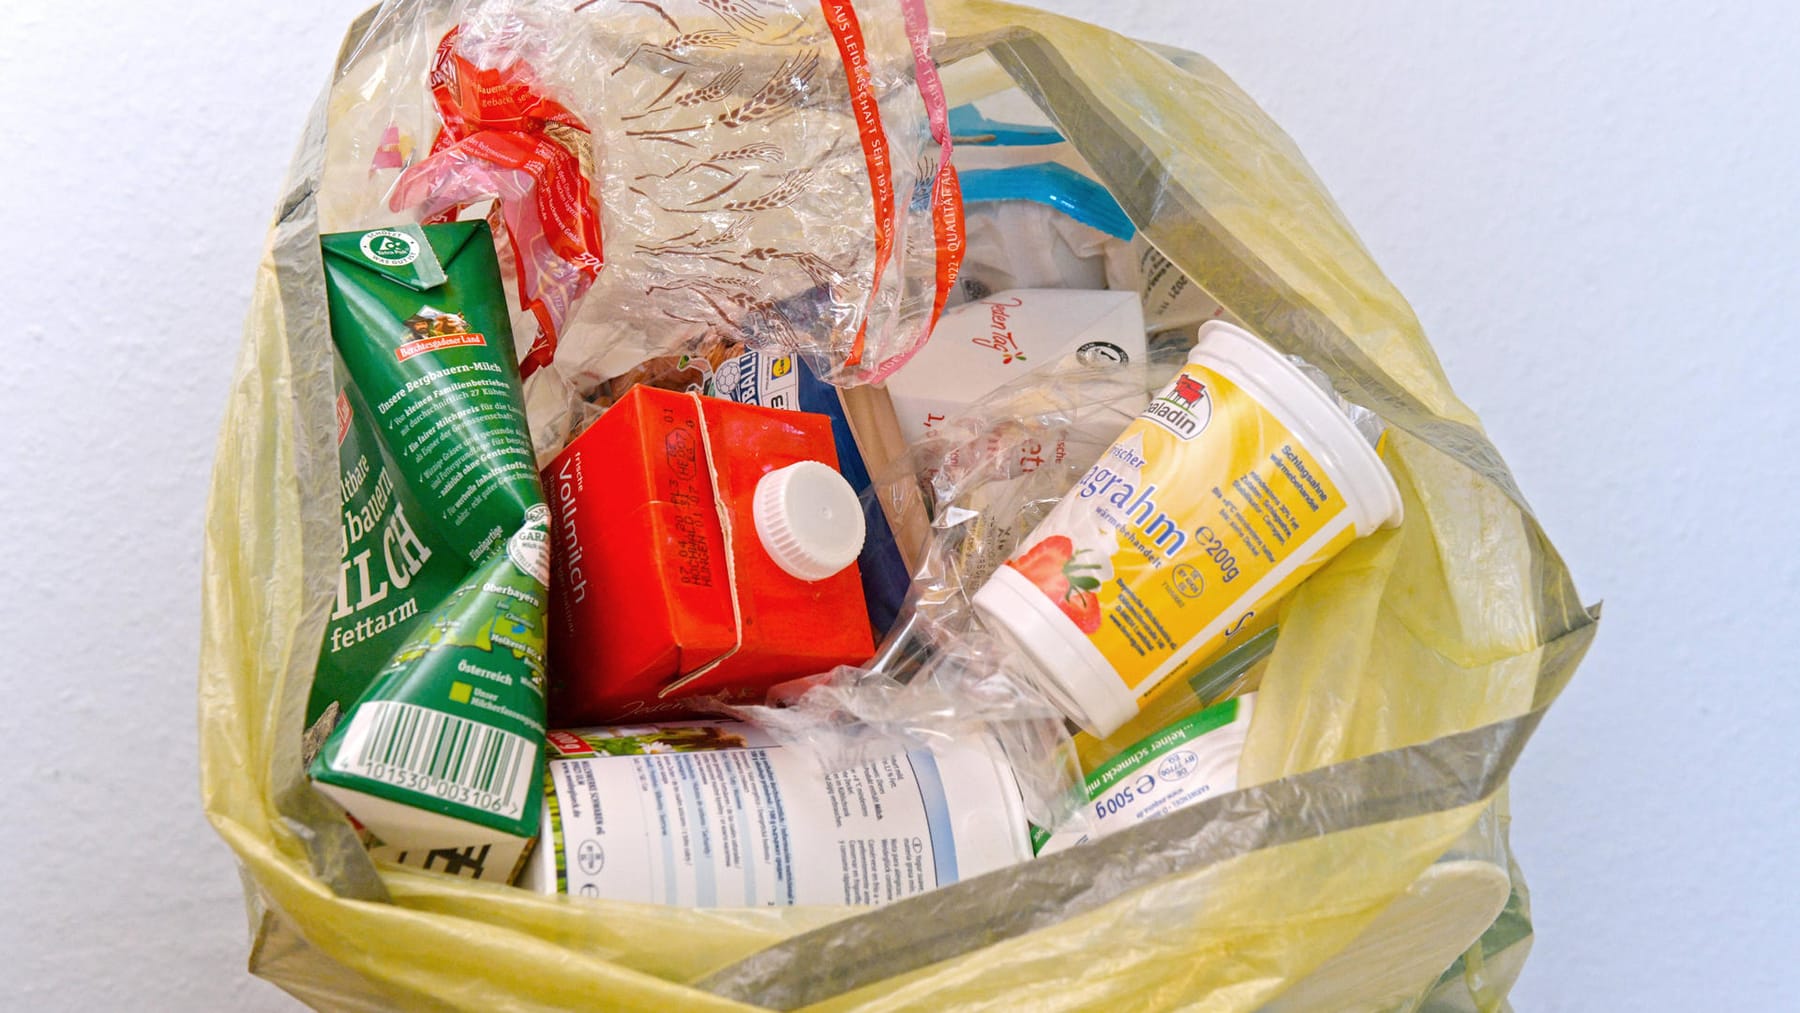 Verpackungsmüll: Neues Rekordhoch bei Müllmenge in Deutschland